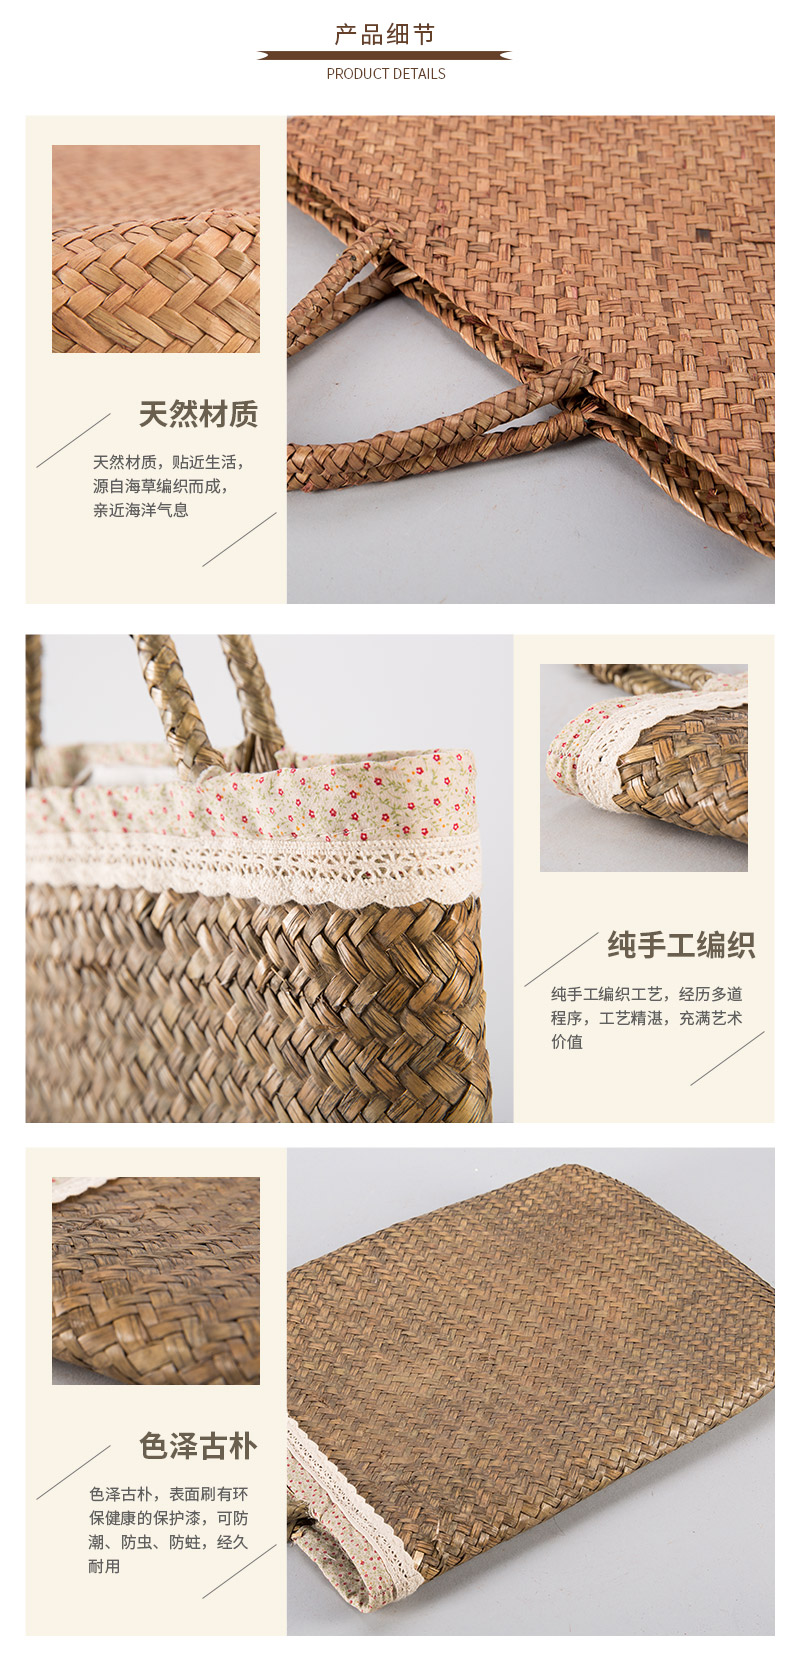 Fashion handbags woven straw seaweed4